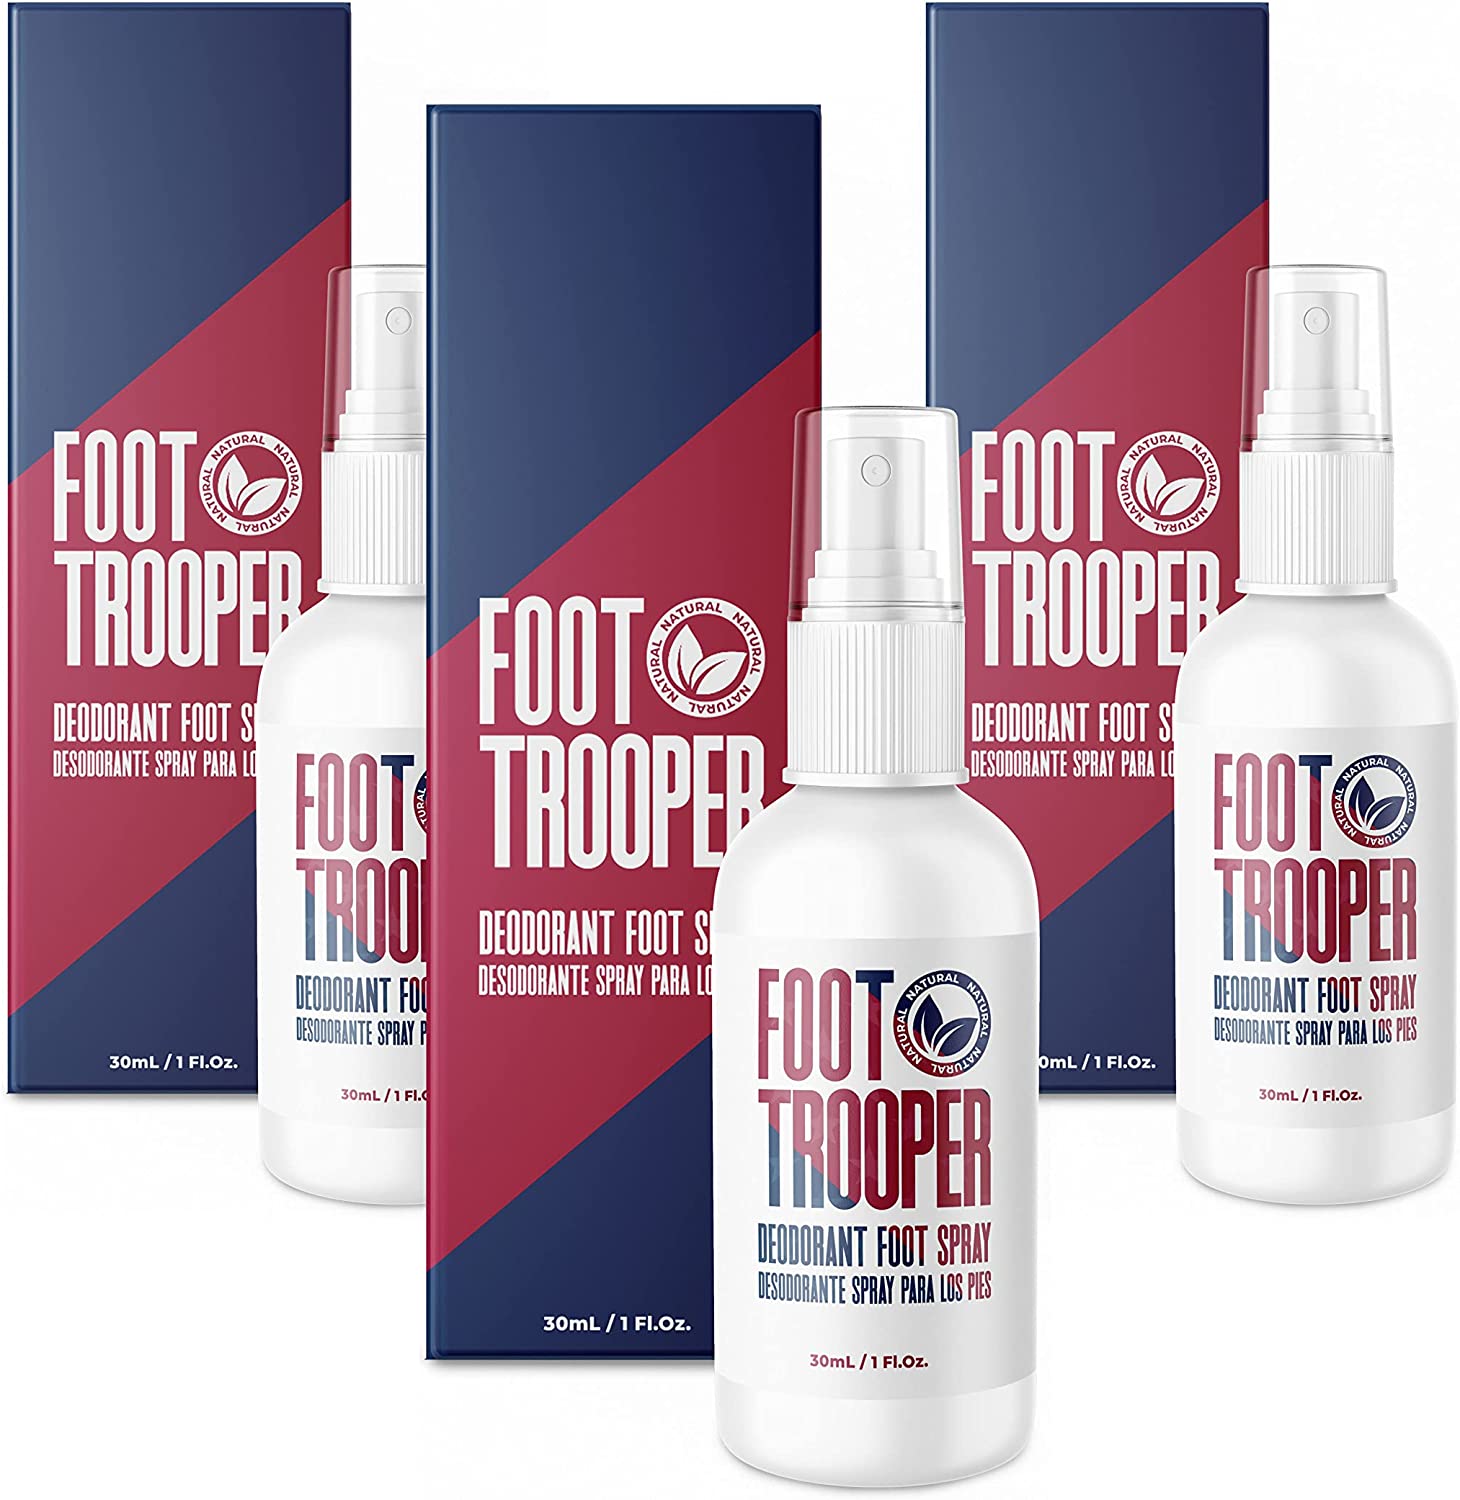 Foot Trooper - en pharmacie - sur Amazon - site du fabricant - prix - où acheter